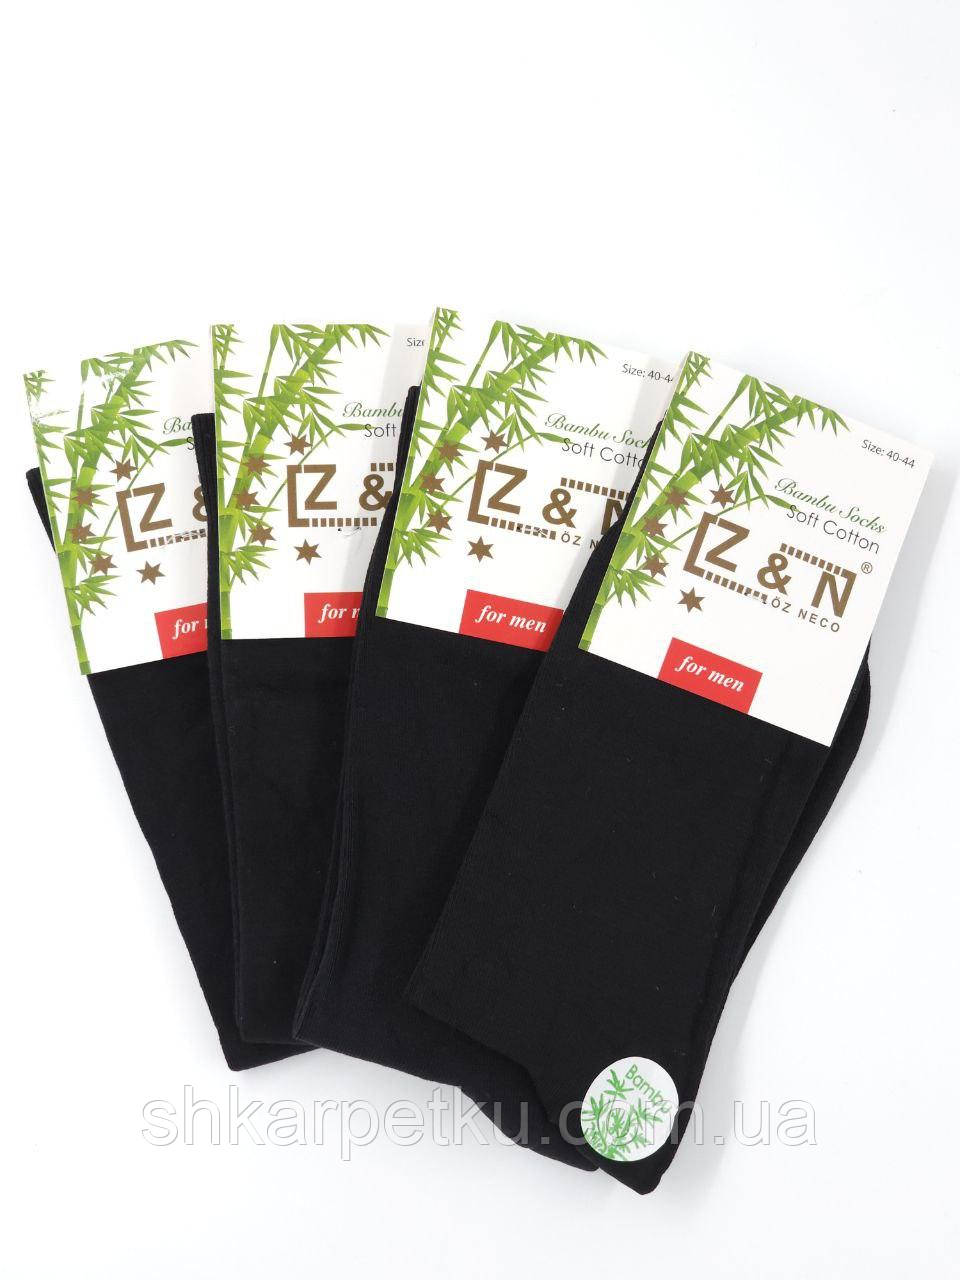 Чоловічі високі демісезонні шкарпетки Z&N бамбук,  однотонні класичні без шва, розмір 40-44, 12 пар/уп. чорний